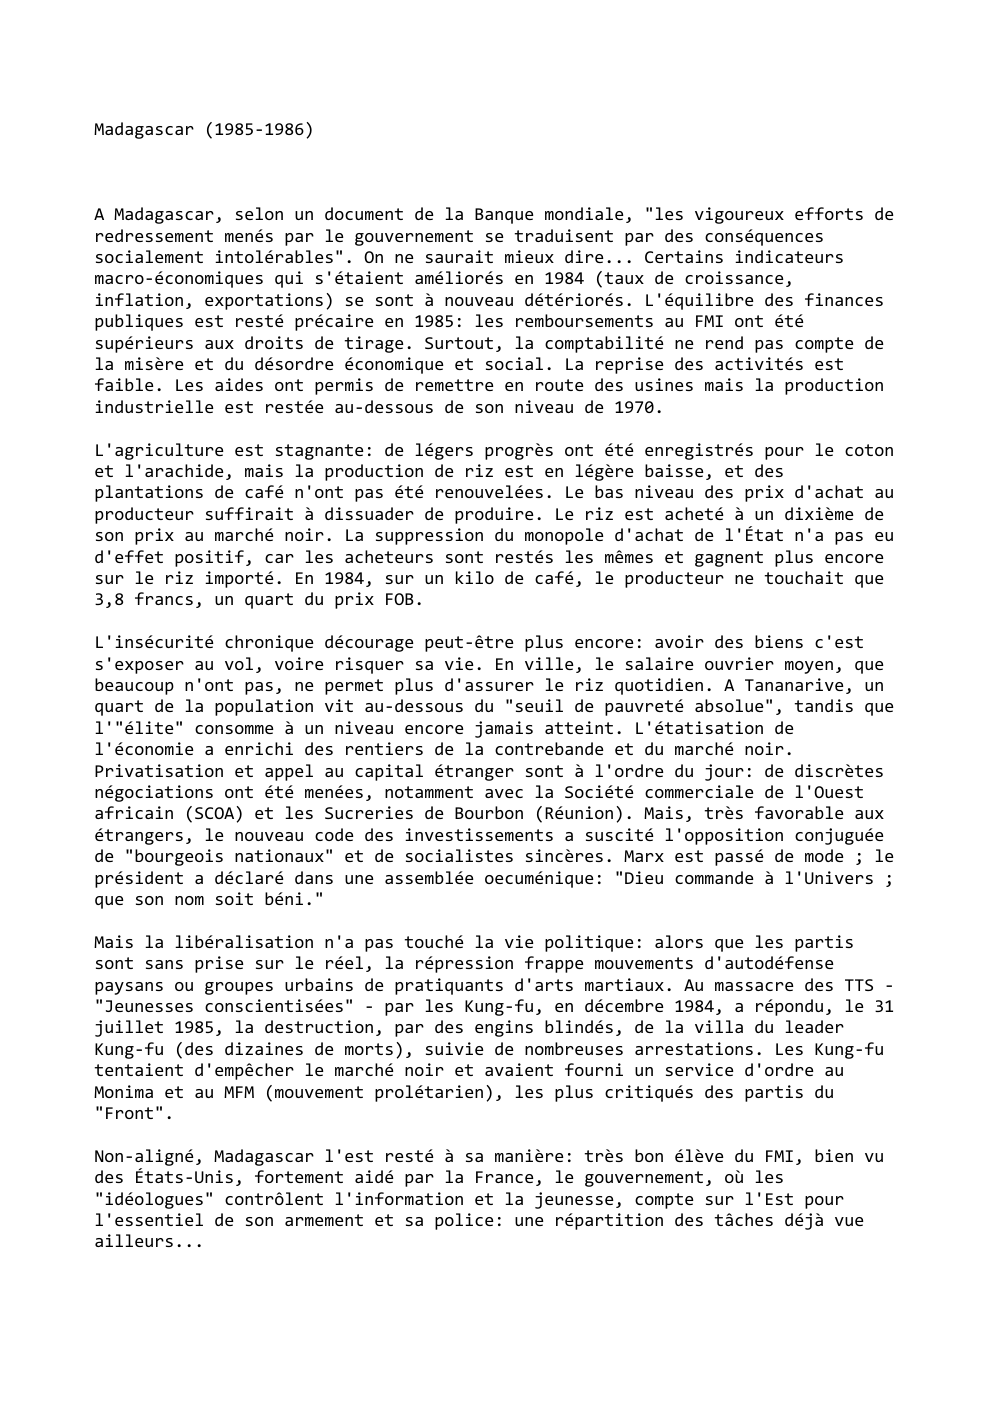 Prévisualisation du document Madagascar (1985-1986)

A Madagascar, selon un document de la Banque mondiale, "les vigoureux efforts de
redressement menés par le gouvernement...